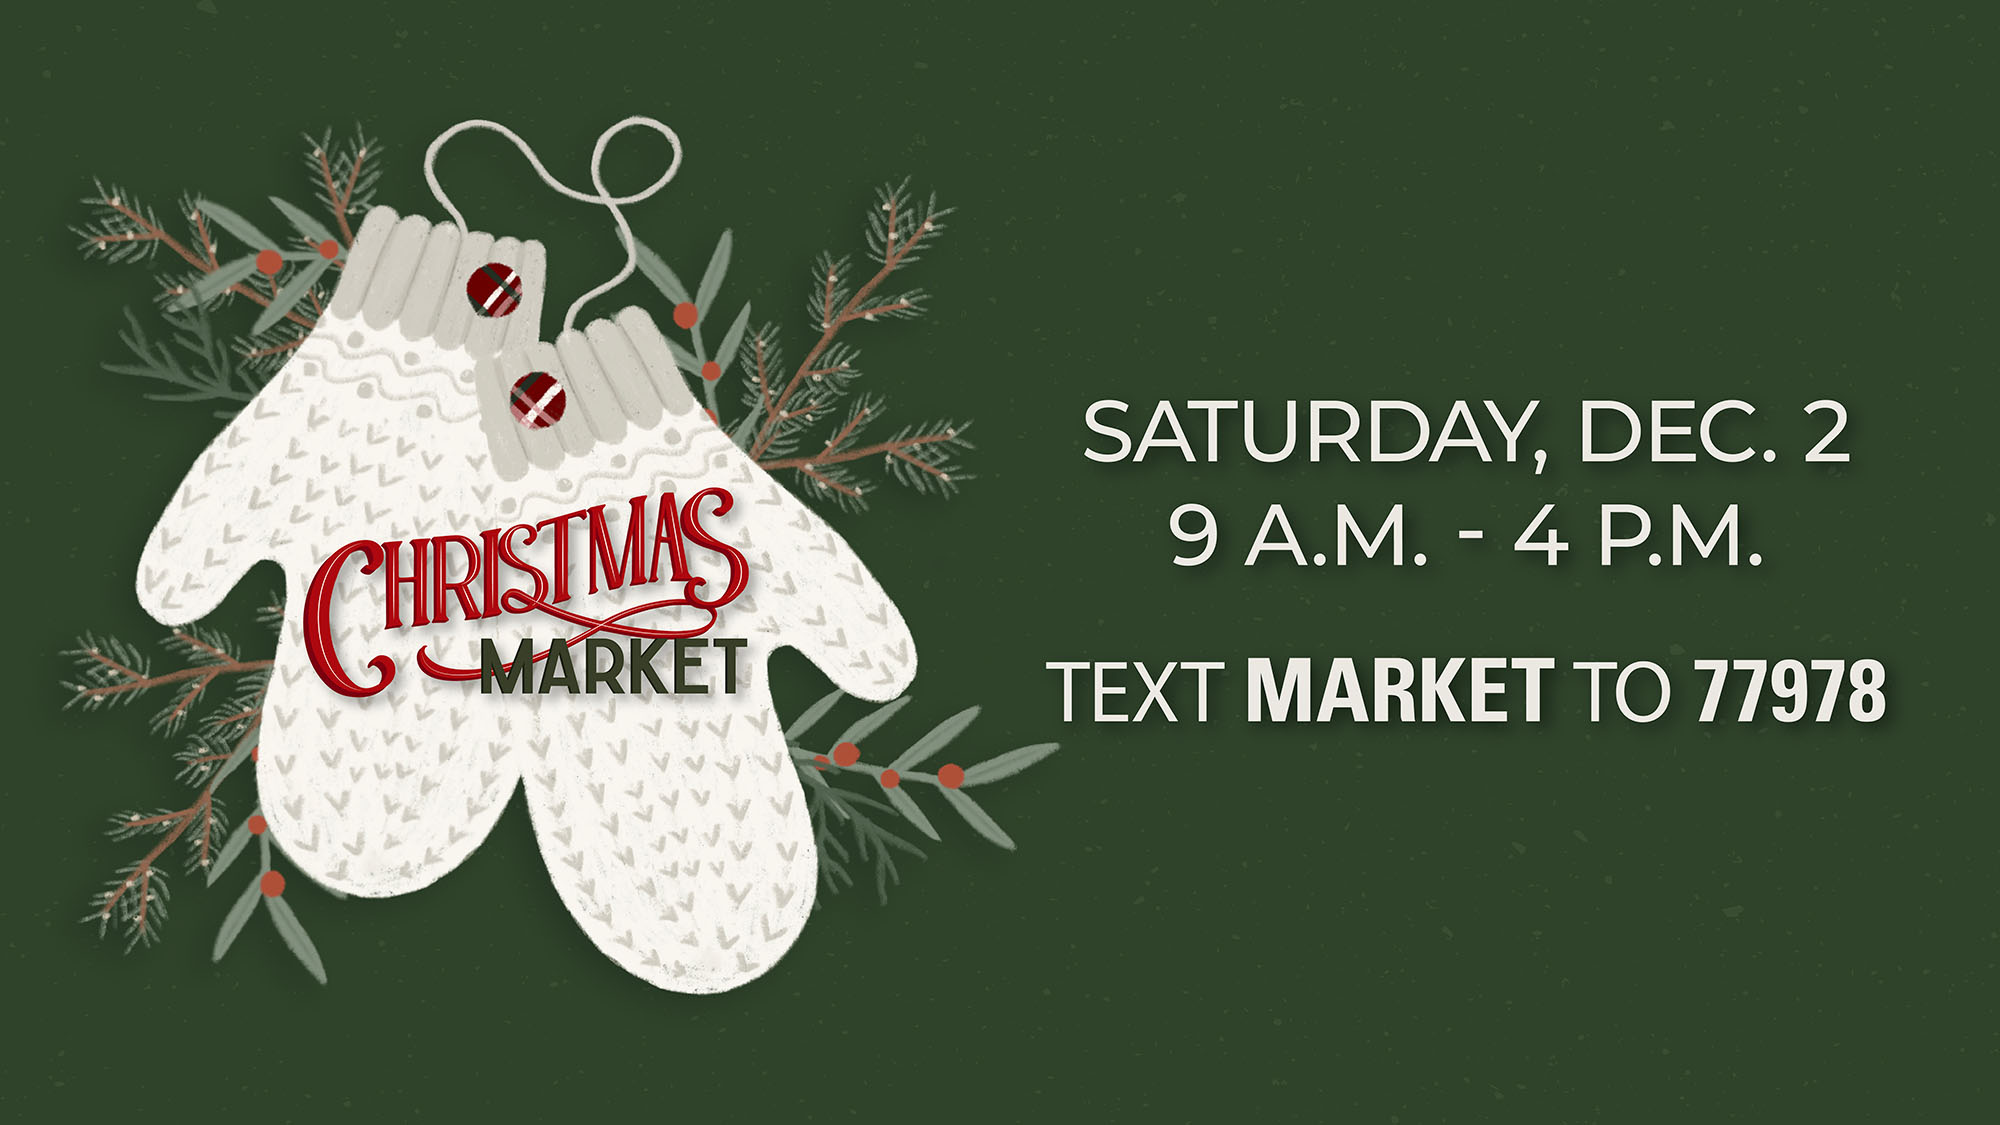 cottonwood christmas market event flyer, details at link